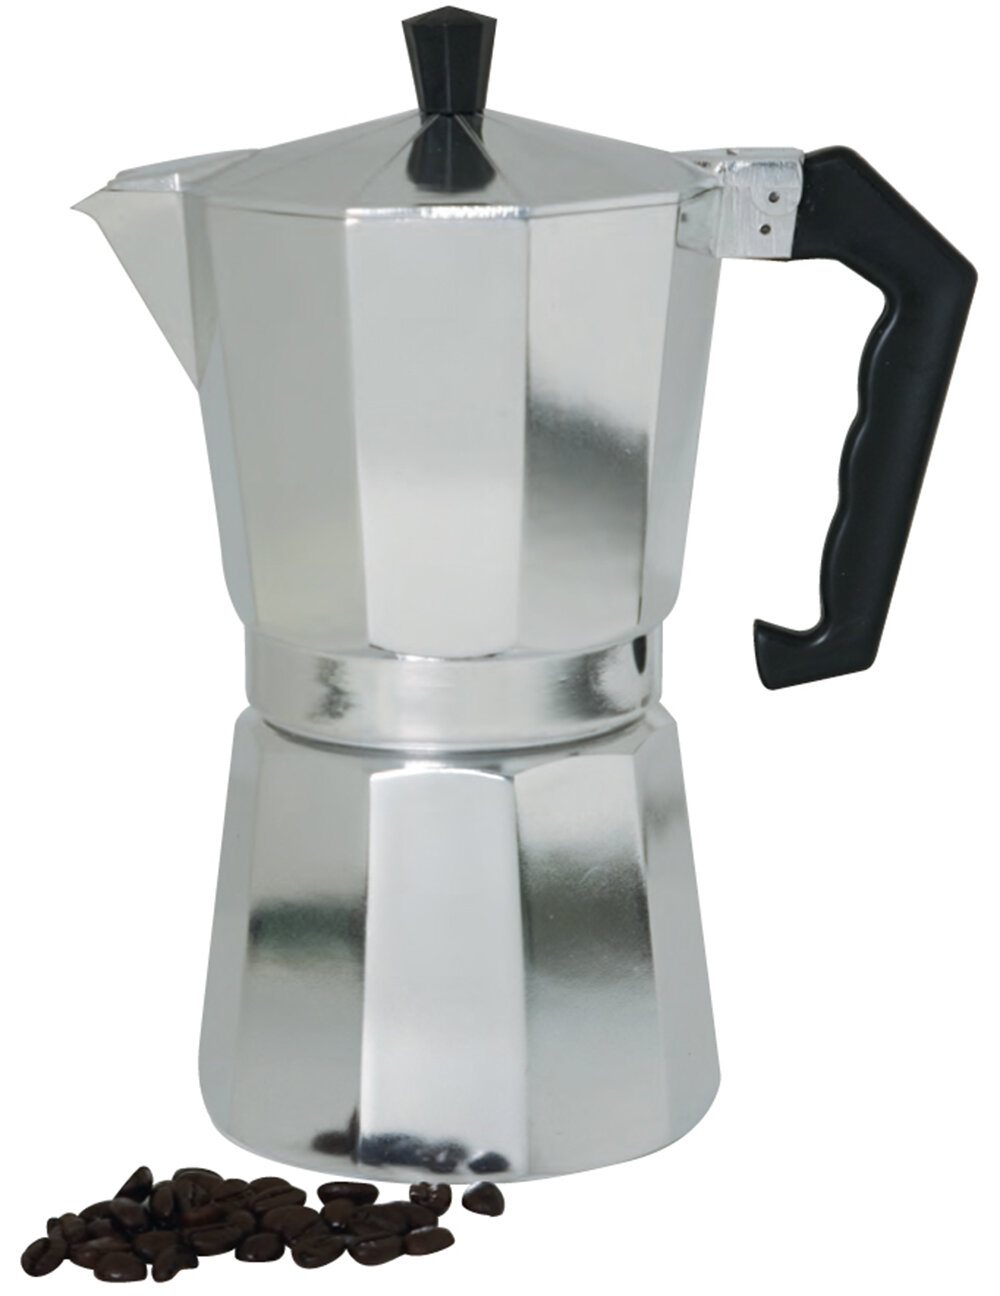 JoyJolt Italian Moka Pot 6-Cup Stovetop Aluminum Espresso Maker, Black